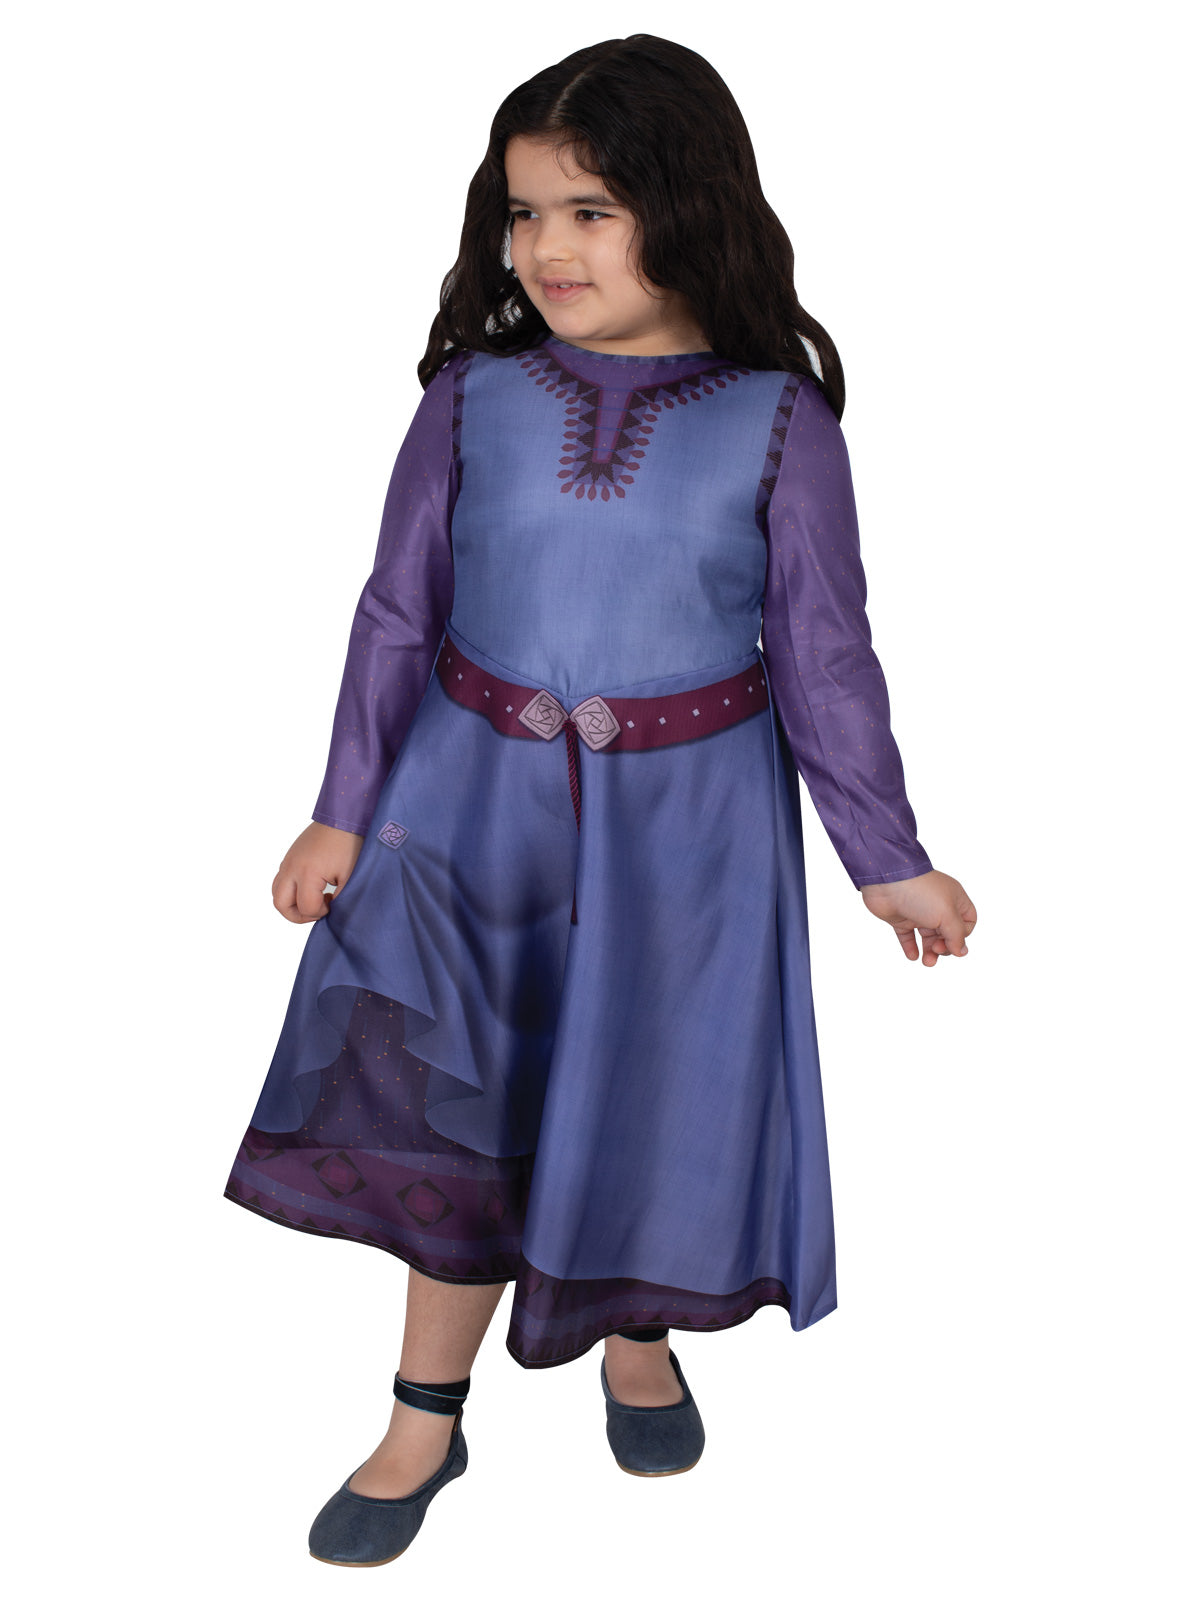 Disney Wish Asha Purple Dress Movie Cosplay Costume Women